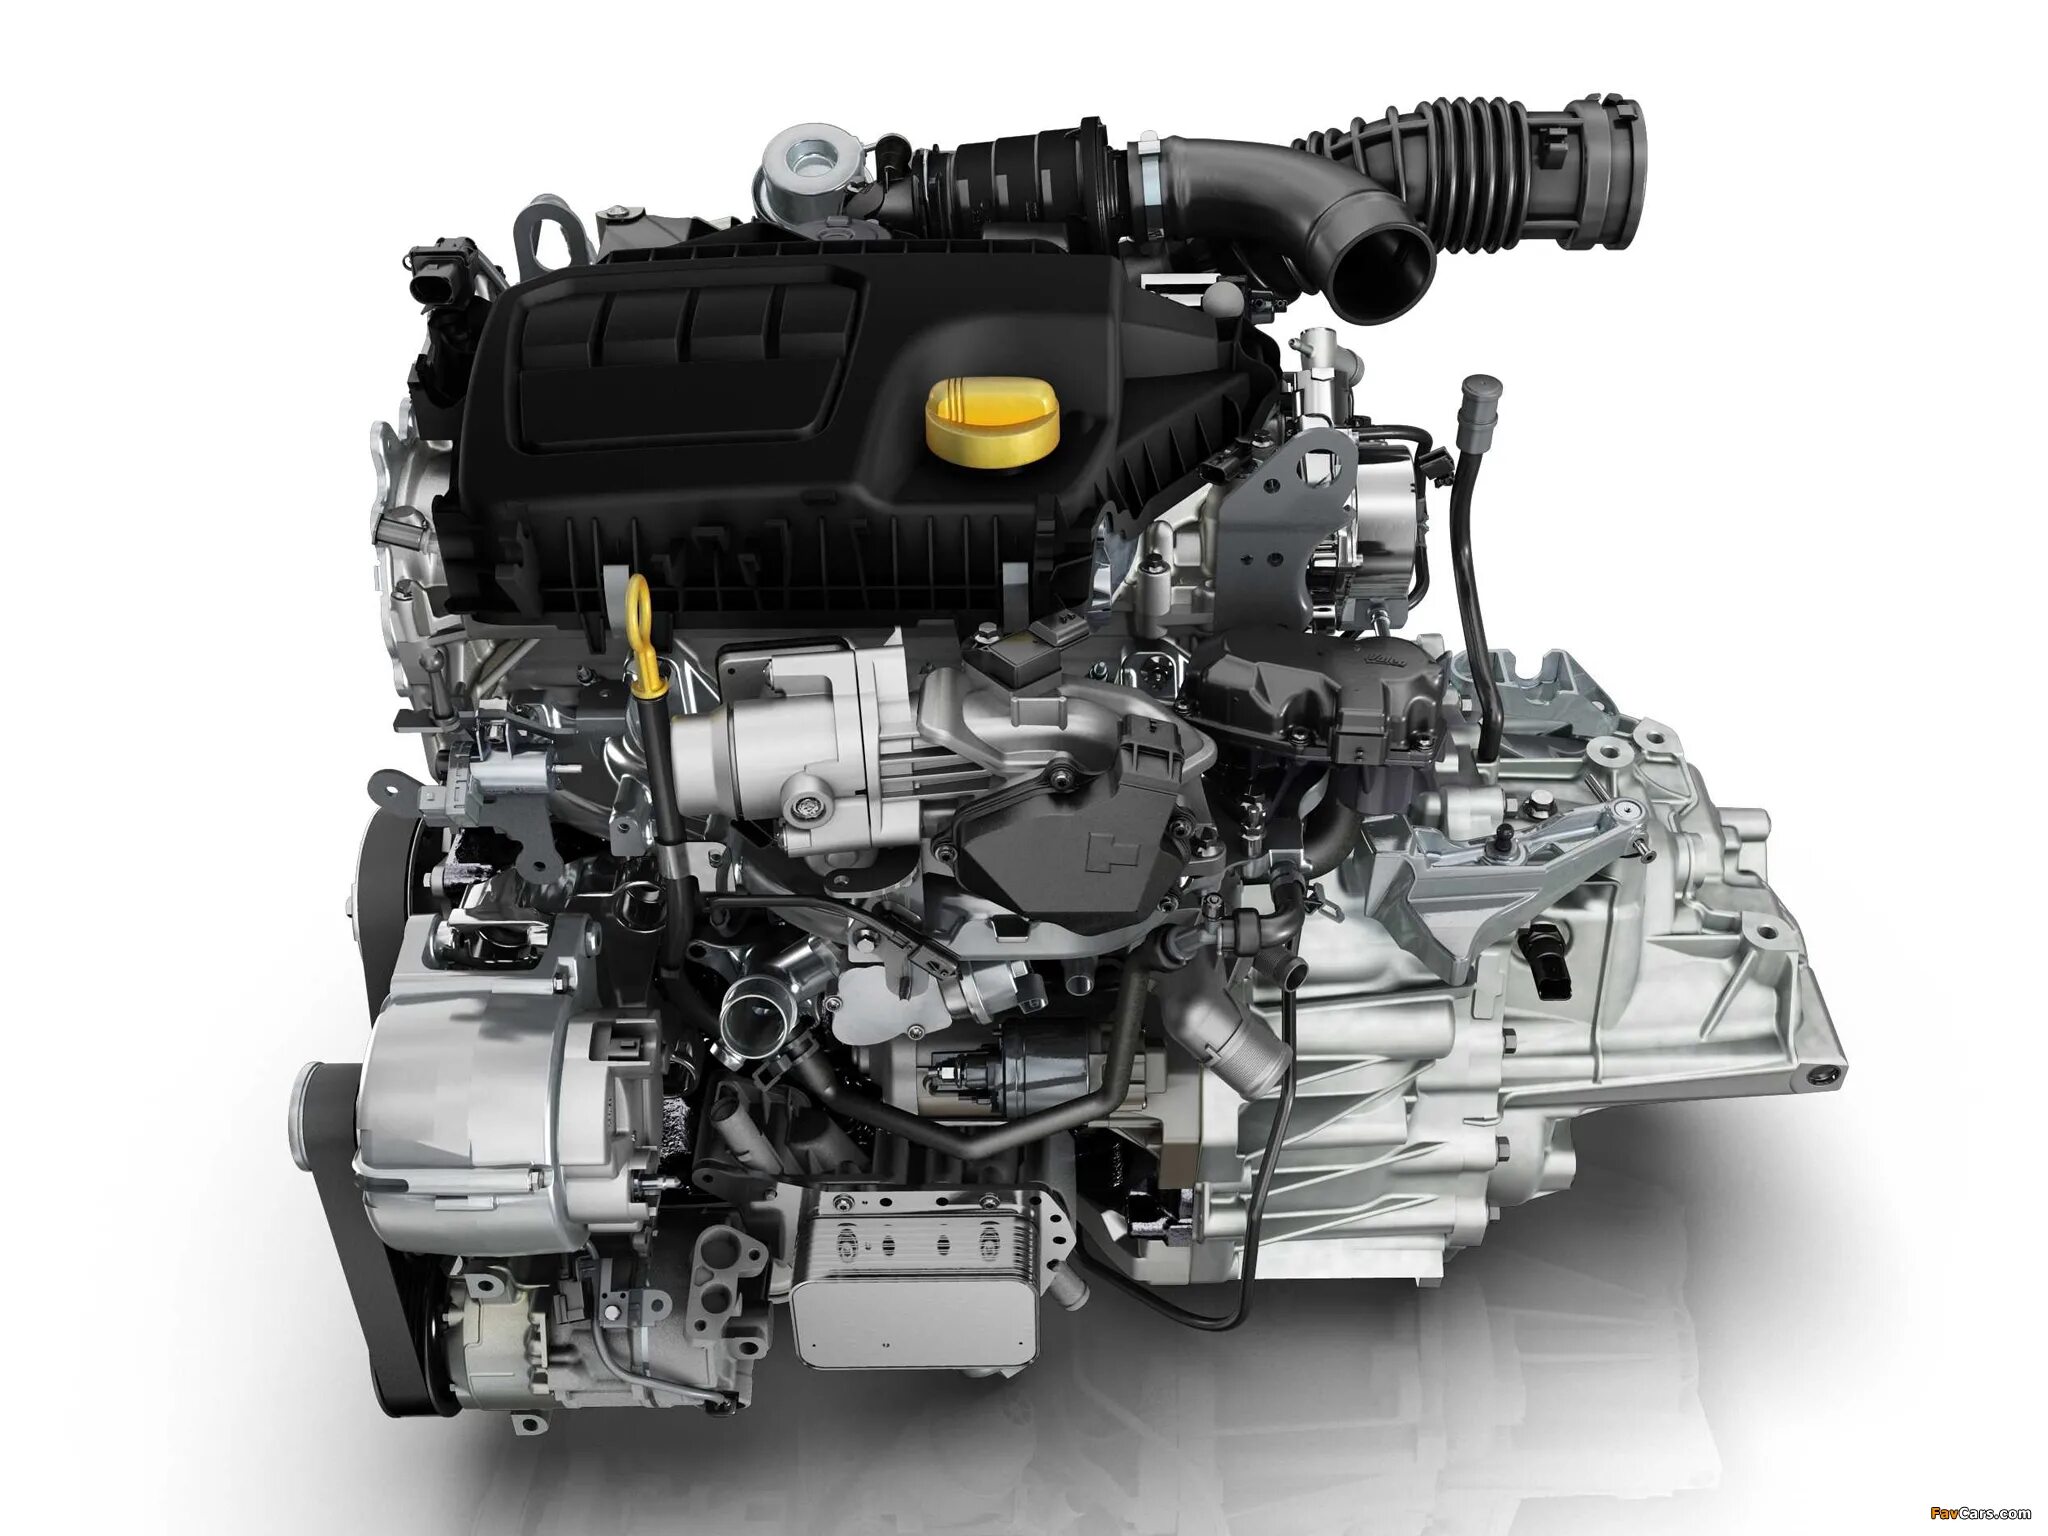 R9m 1.6 DCI 130л.с. Renault r9m 1.6 DCI. Nissan x-Trail двигатель m9r. R9m 1.6 DCI дизельный турбированный 130.